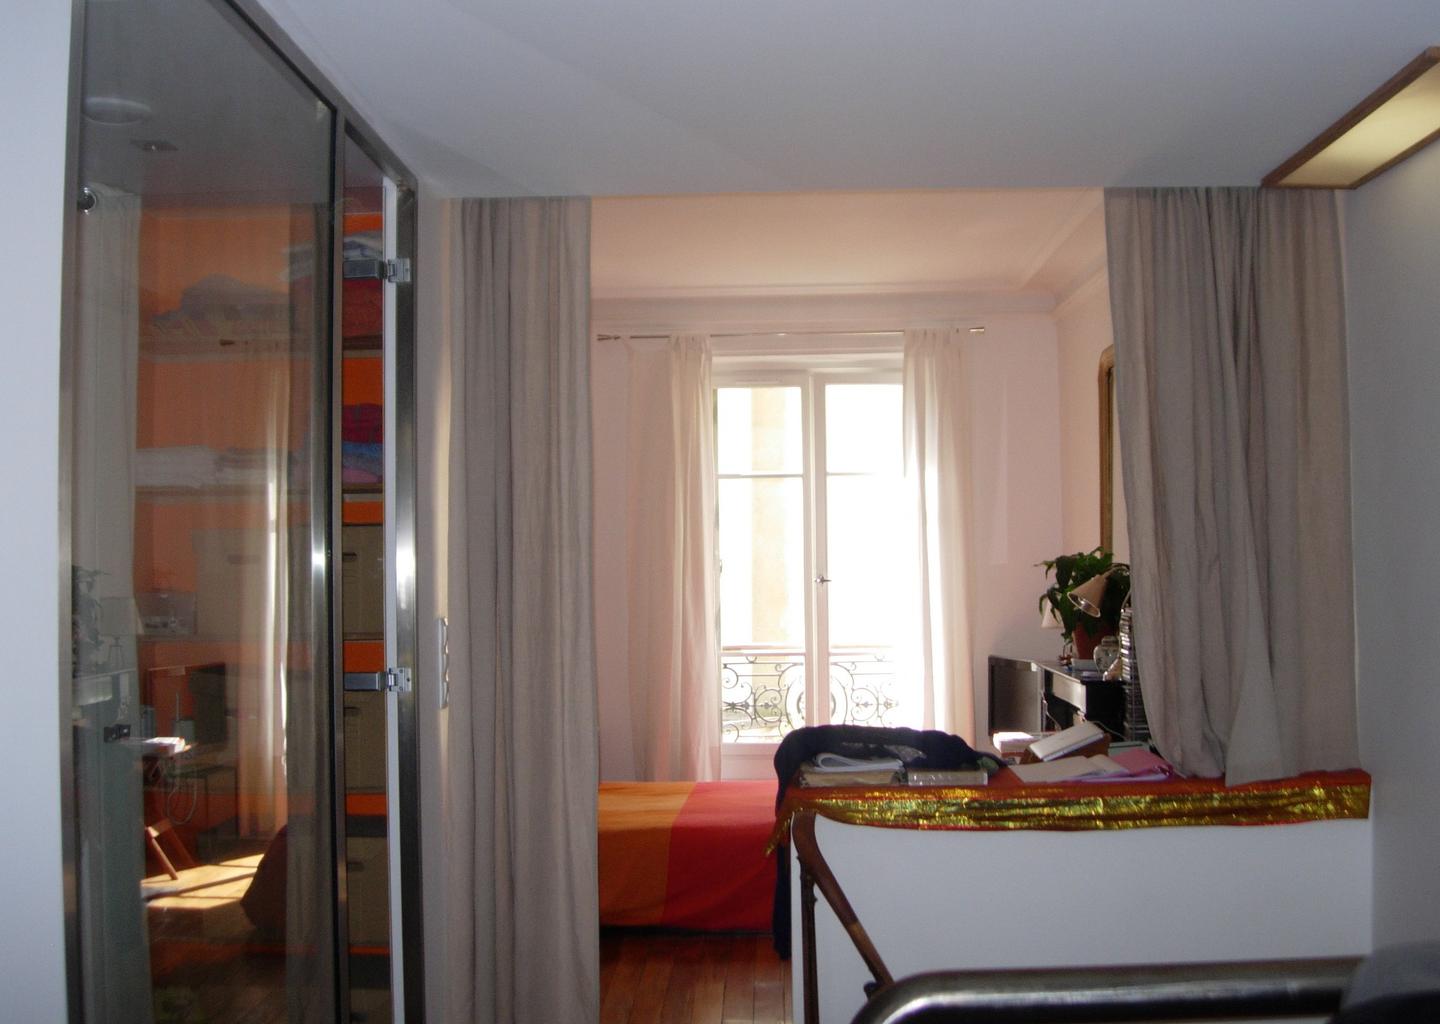 Hôte GreenGo: Eco logement Parisien sur 2 niveaux (RDC et 1er étage). - Image 10